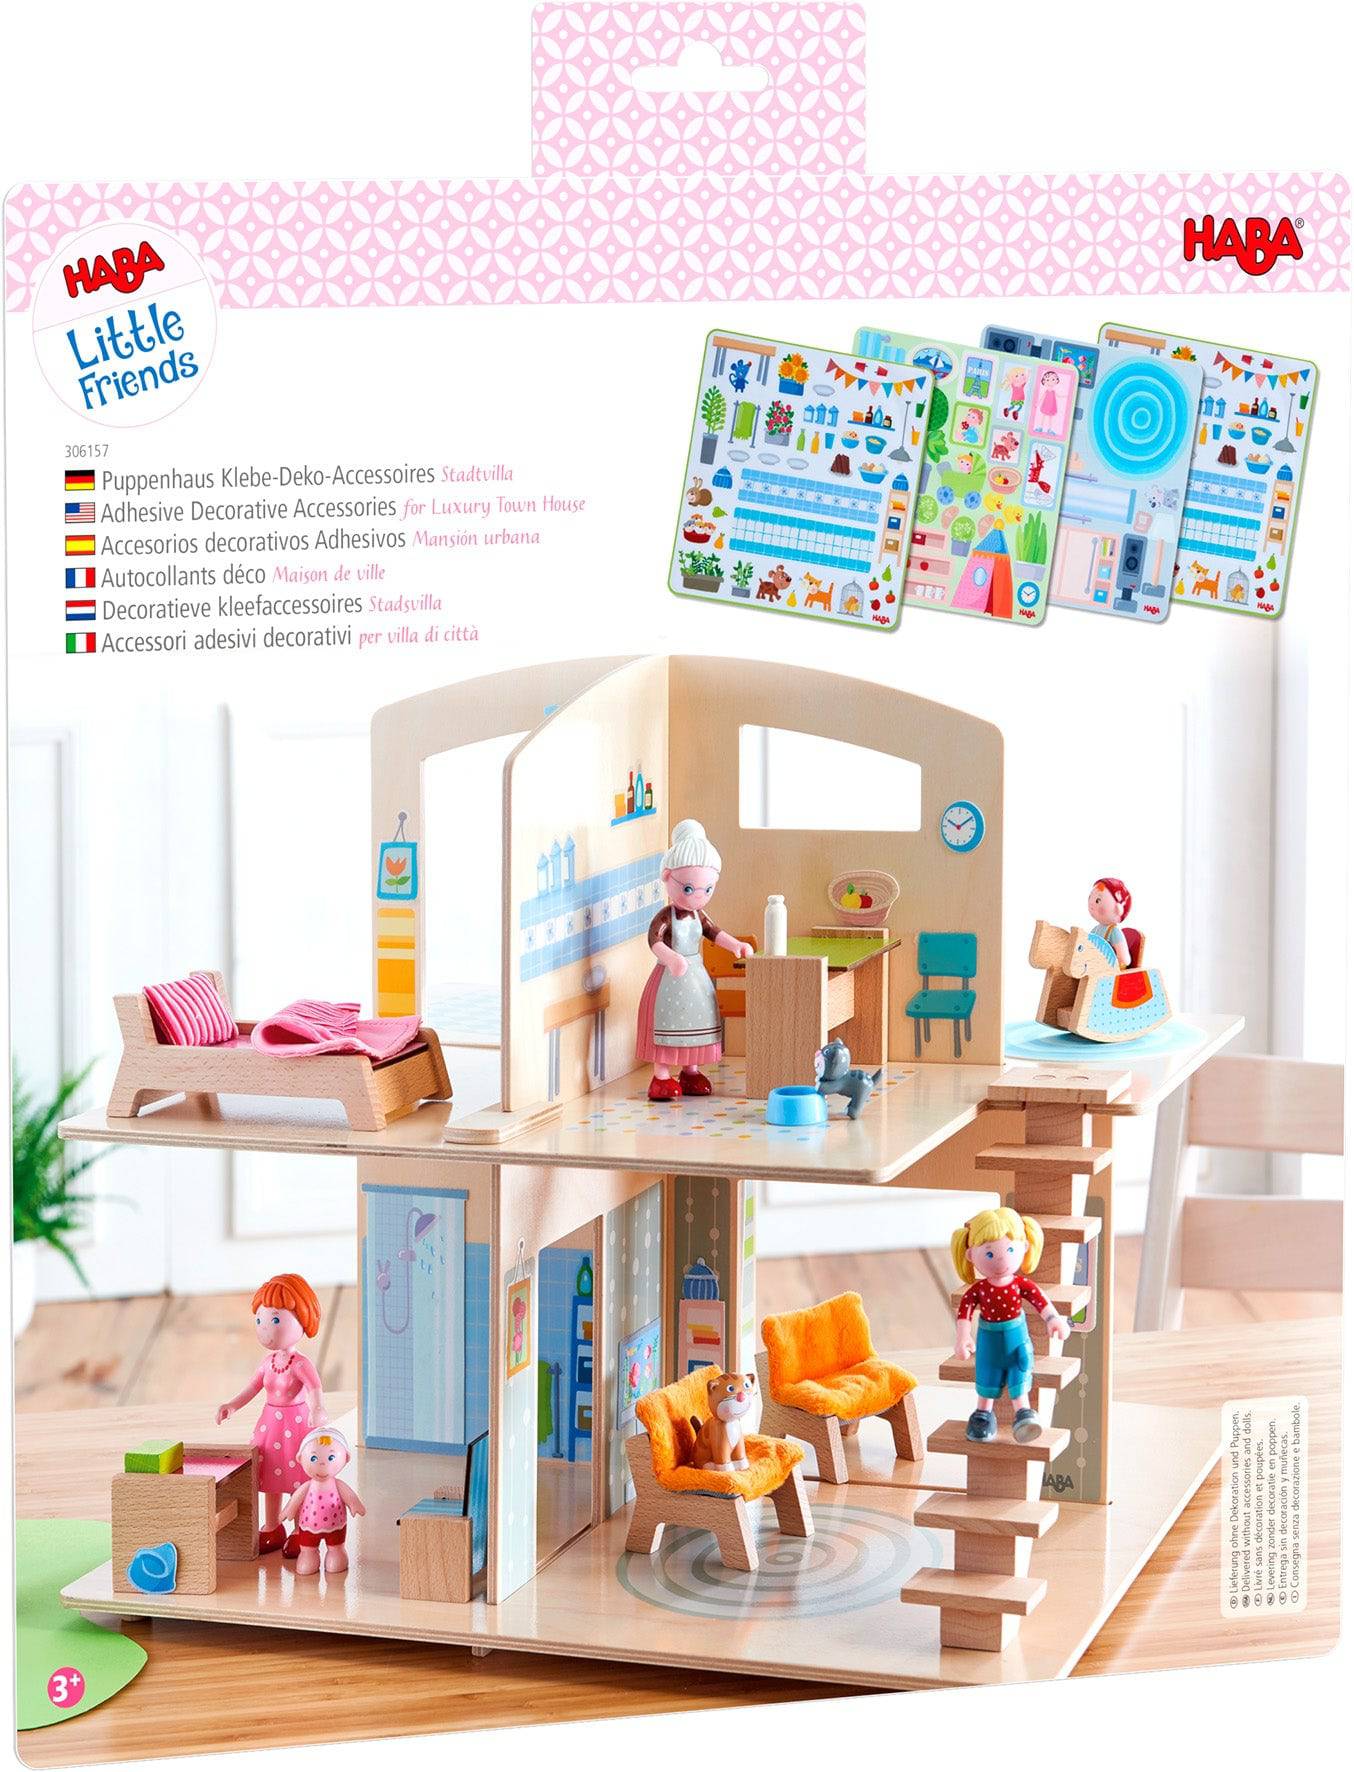 Haba - Little Friends Dollhouse Accessories Kitchen